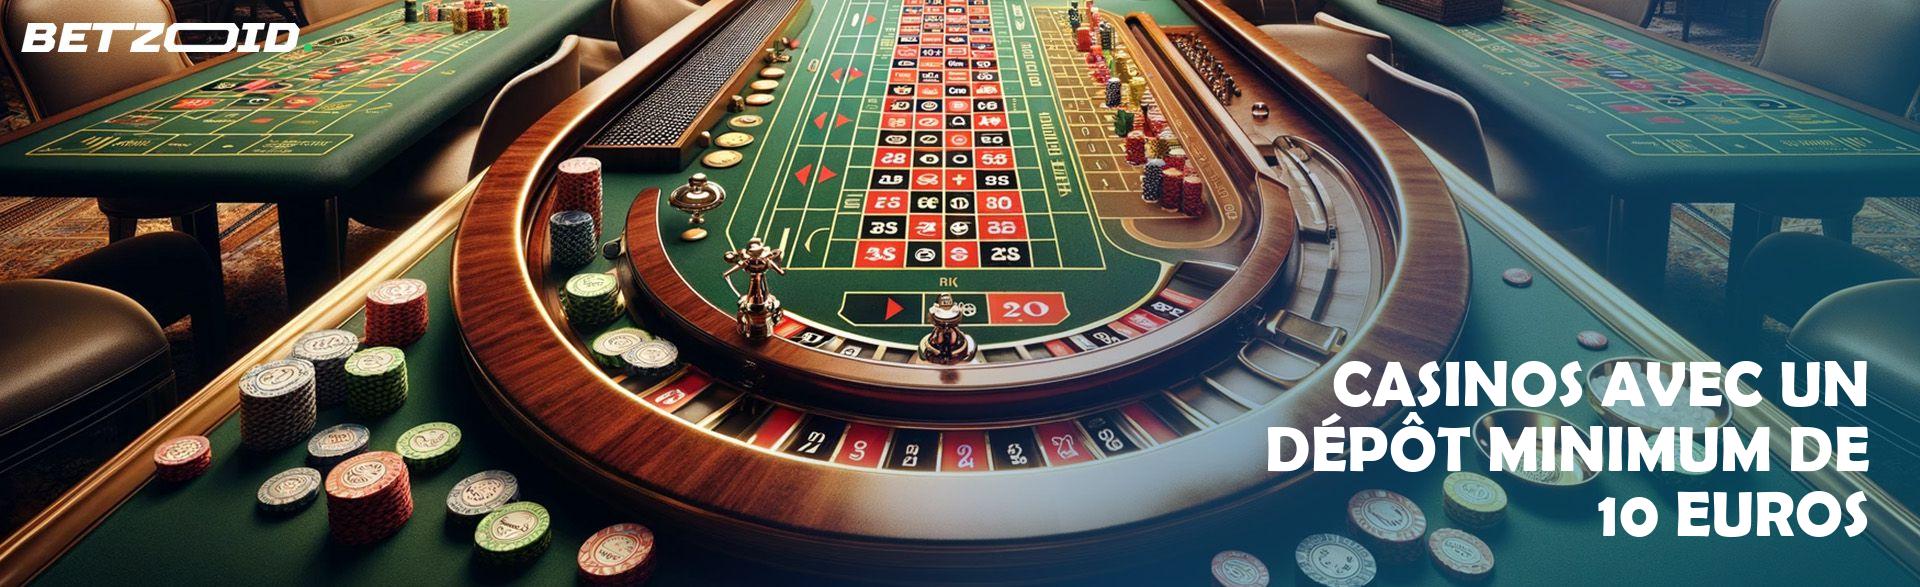 Casinos avec un Dépôt Minimum de 10 Euros.